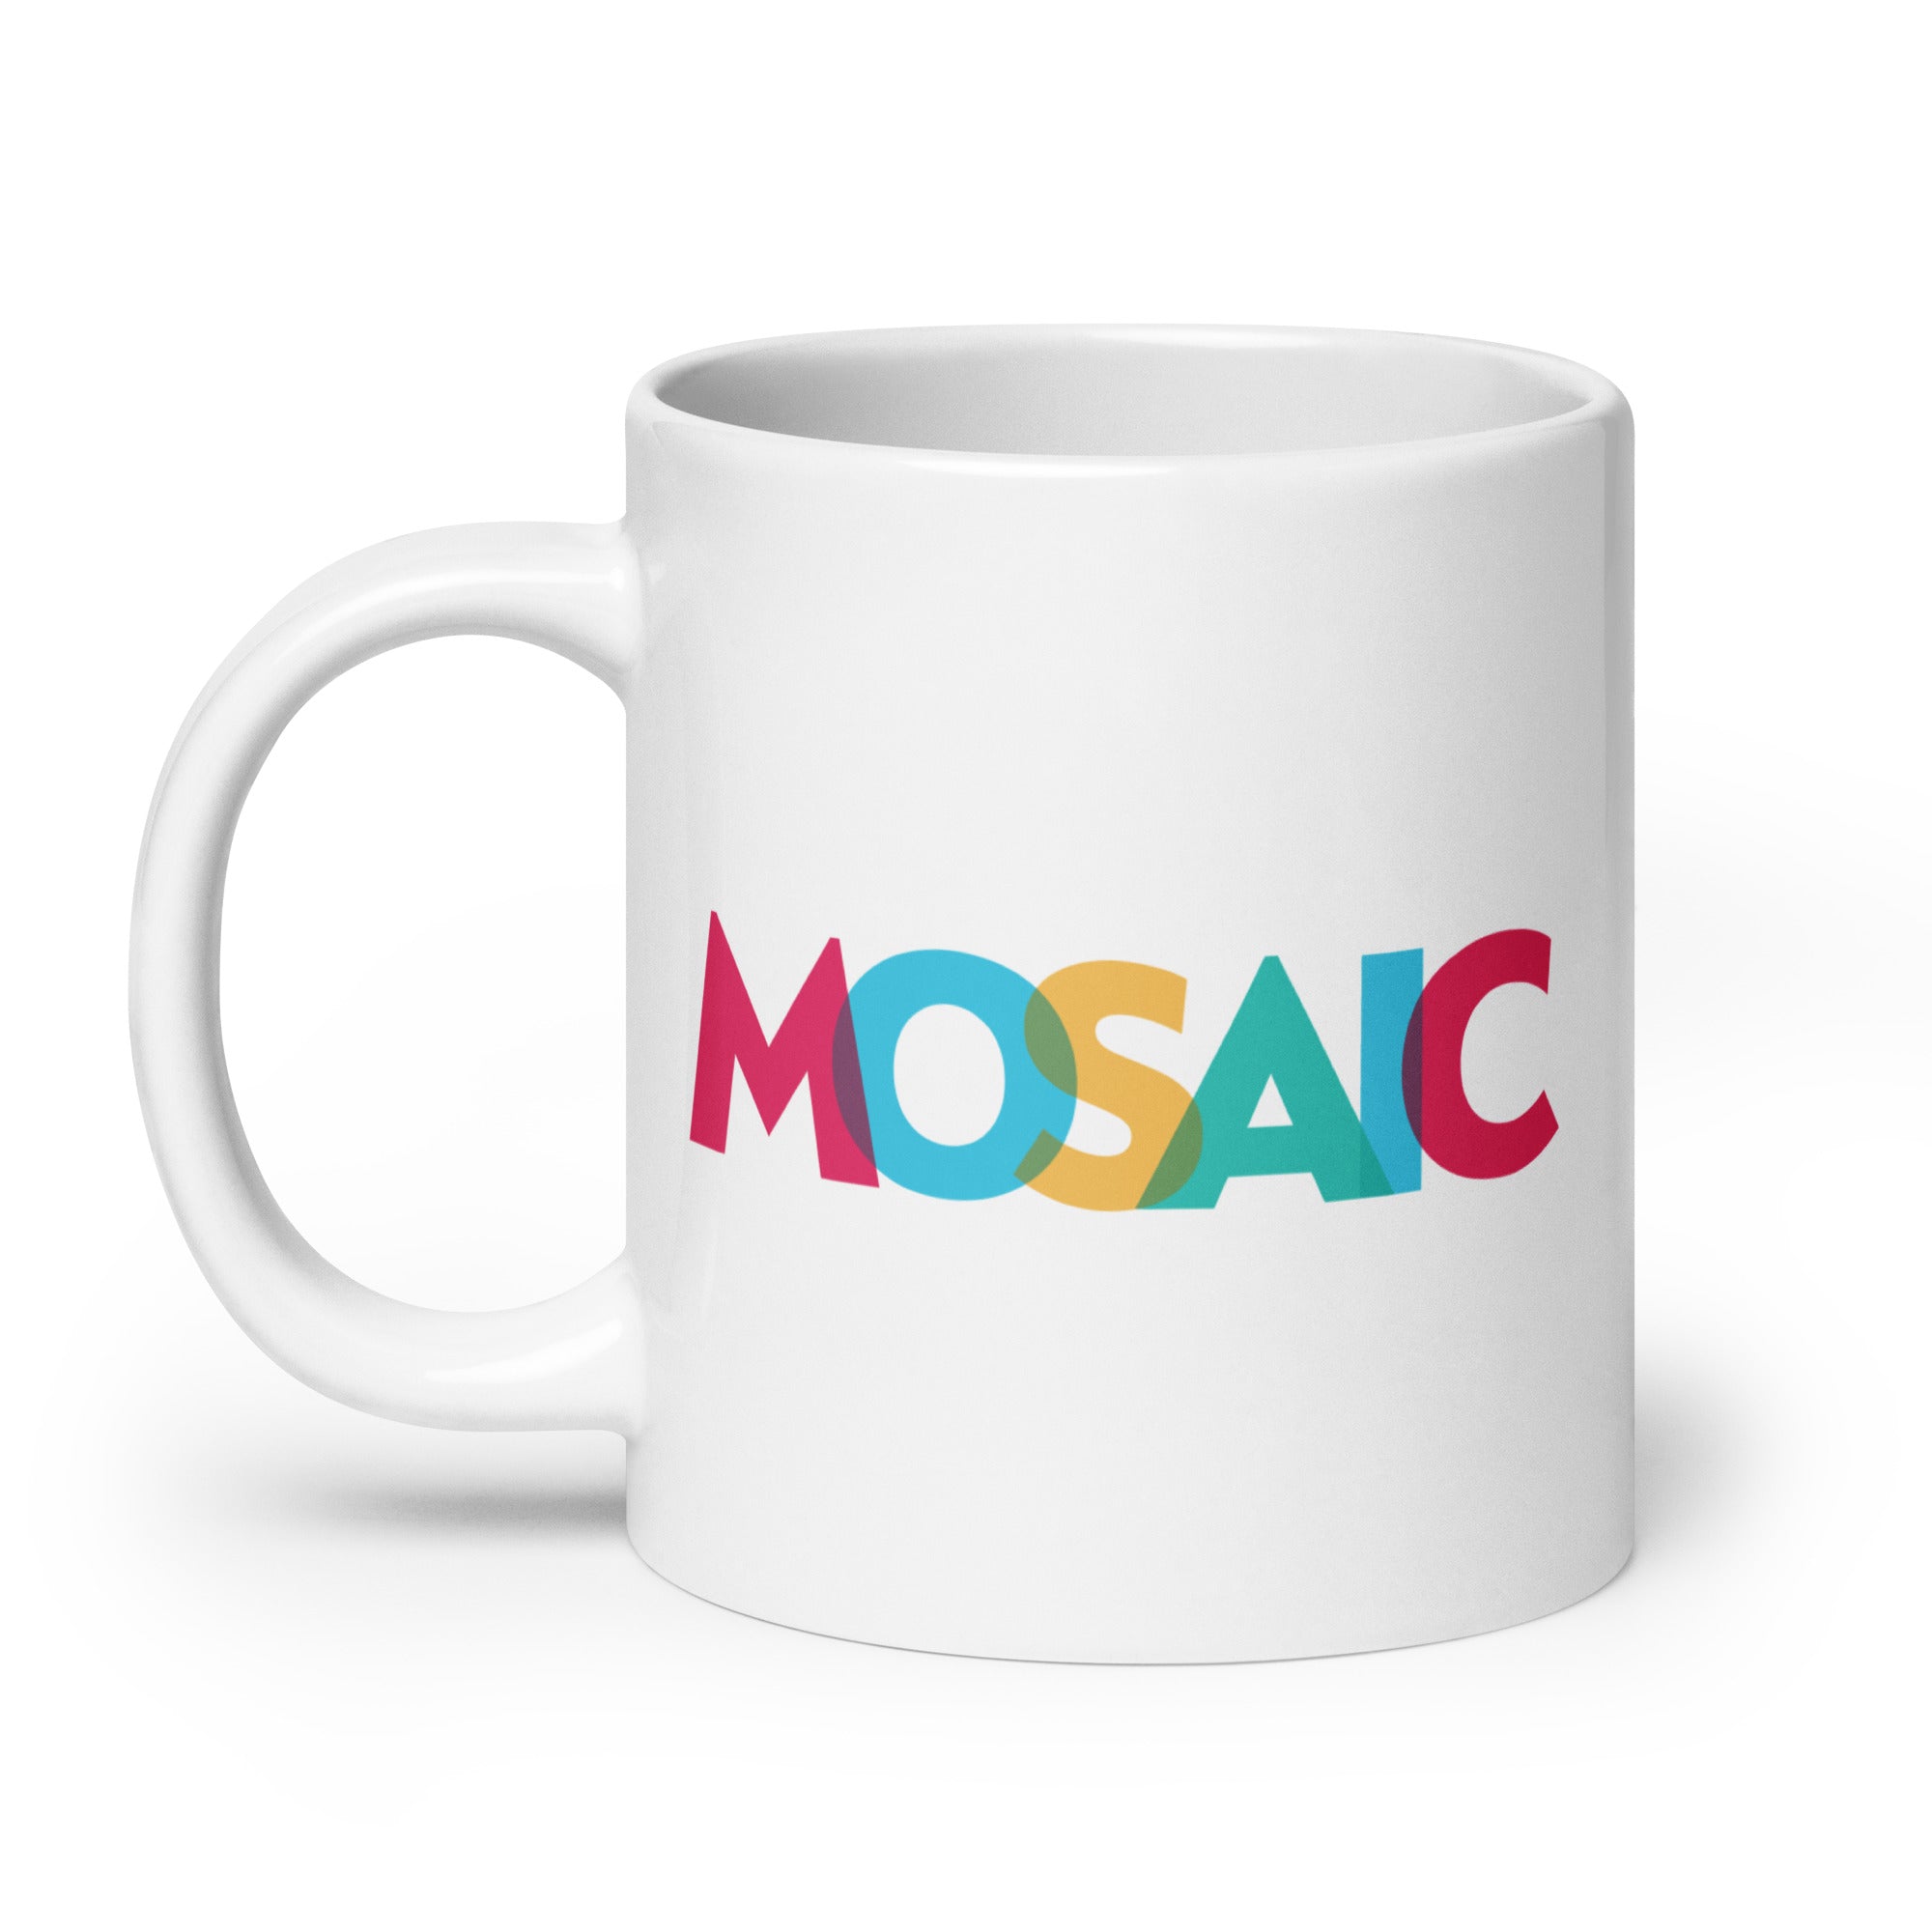 Mosaic: Mug